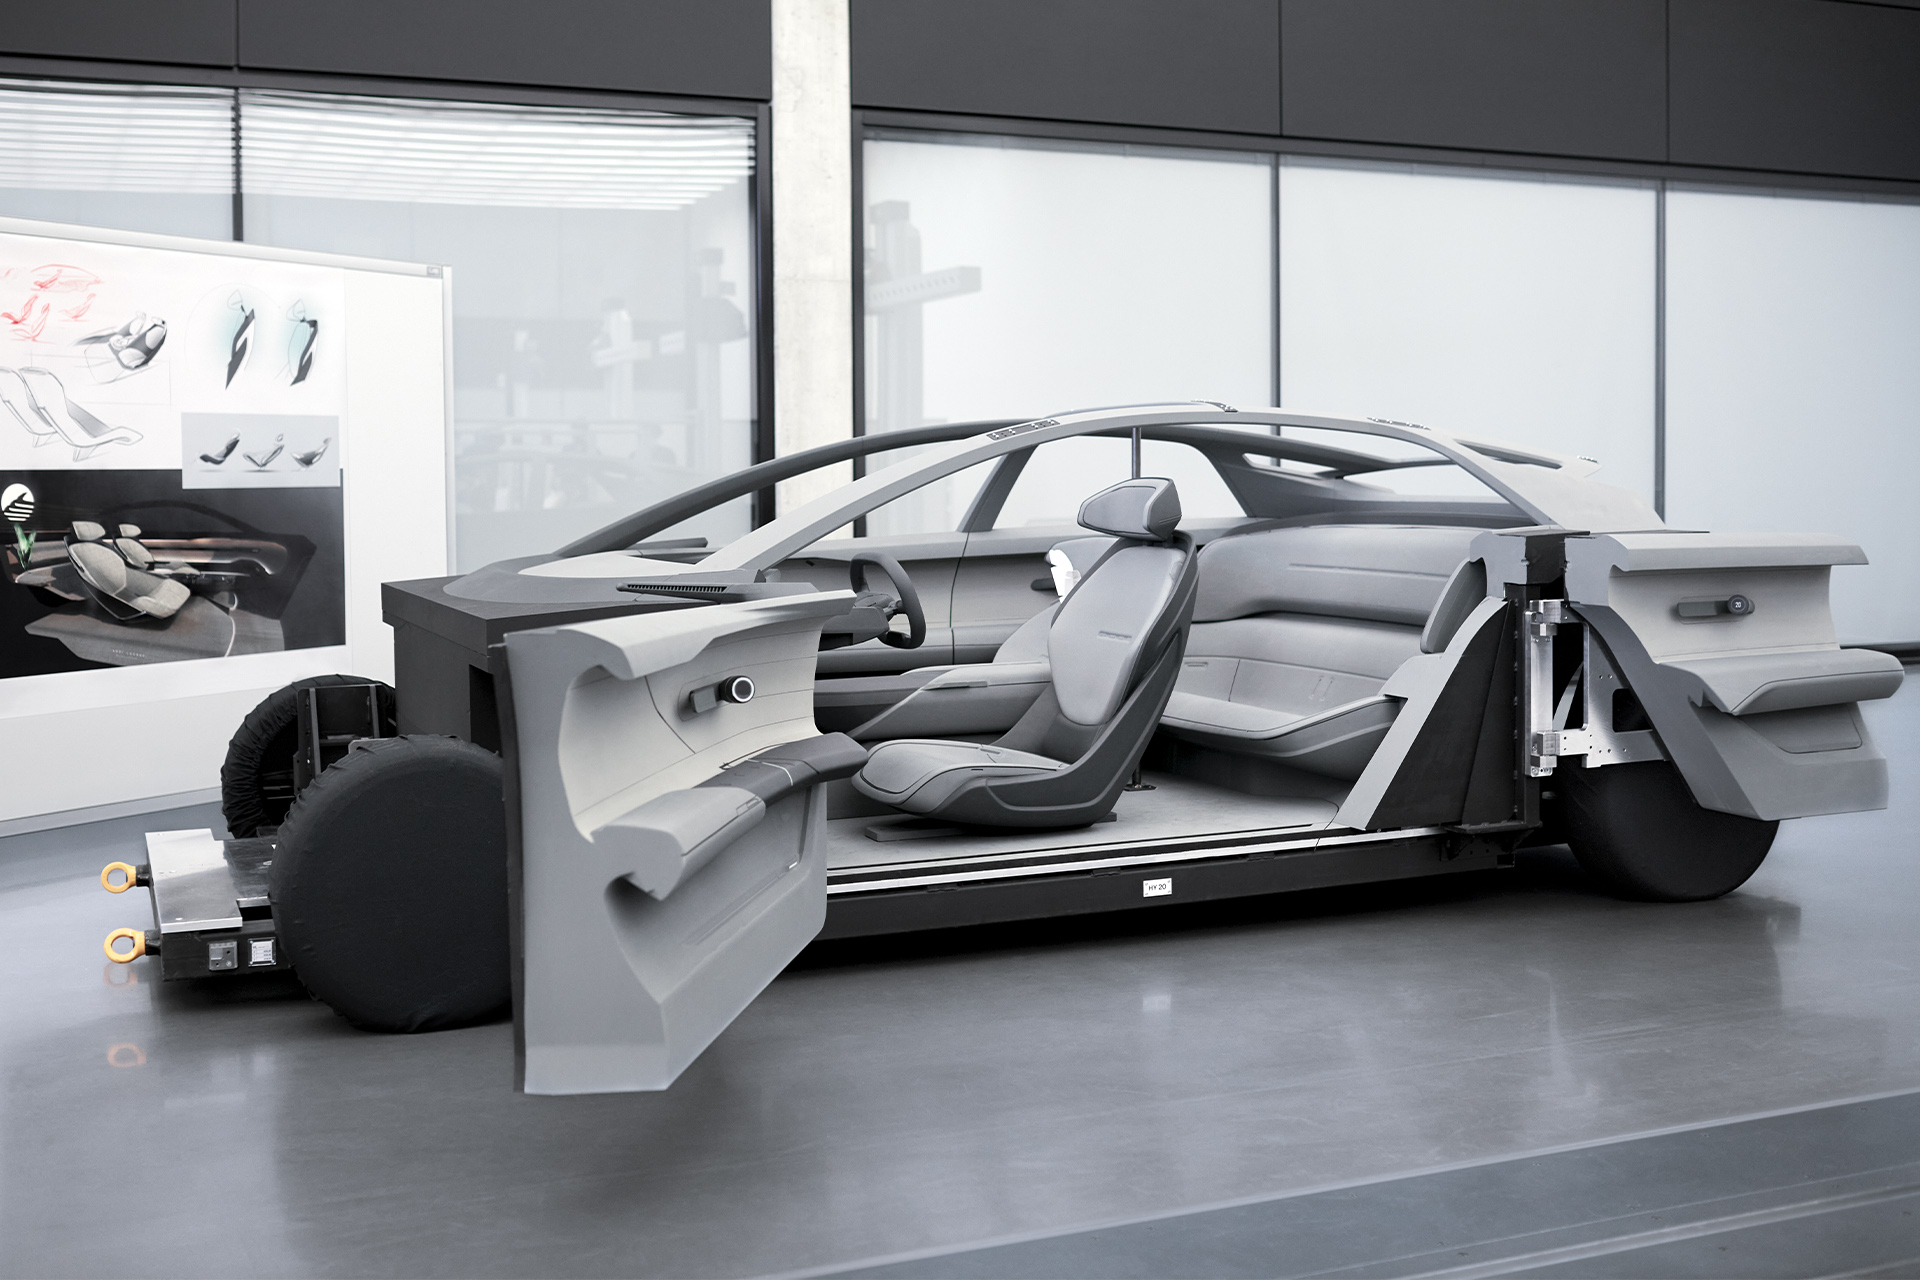 Modello del concept Audi grandsphere con porte aperte.